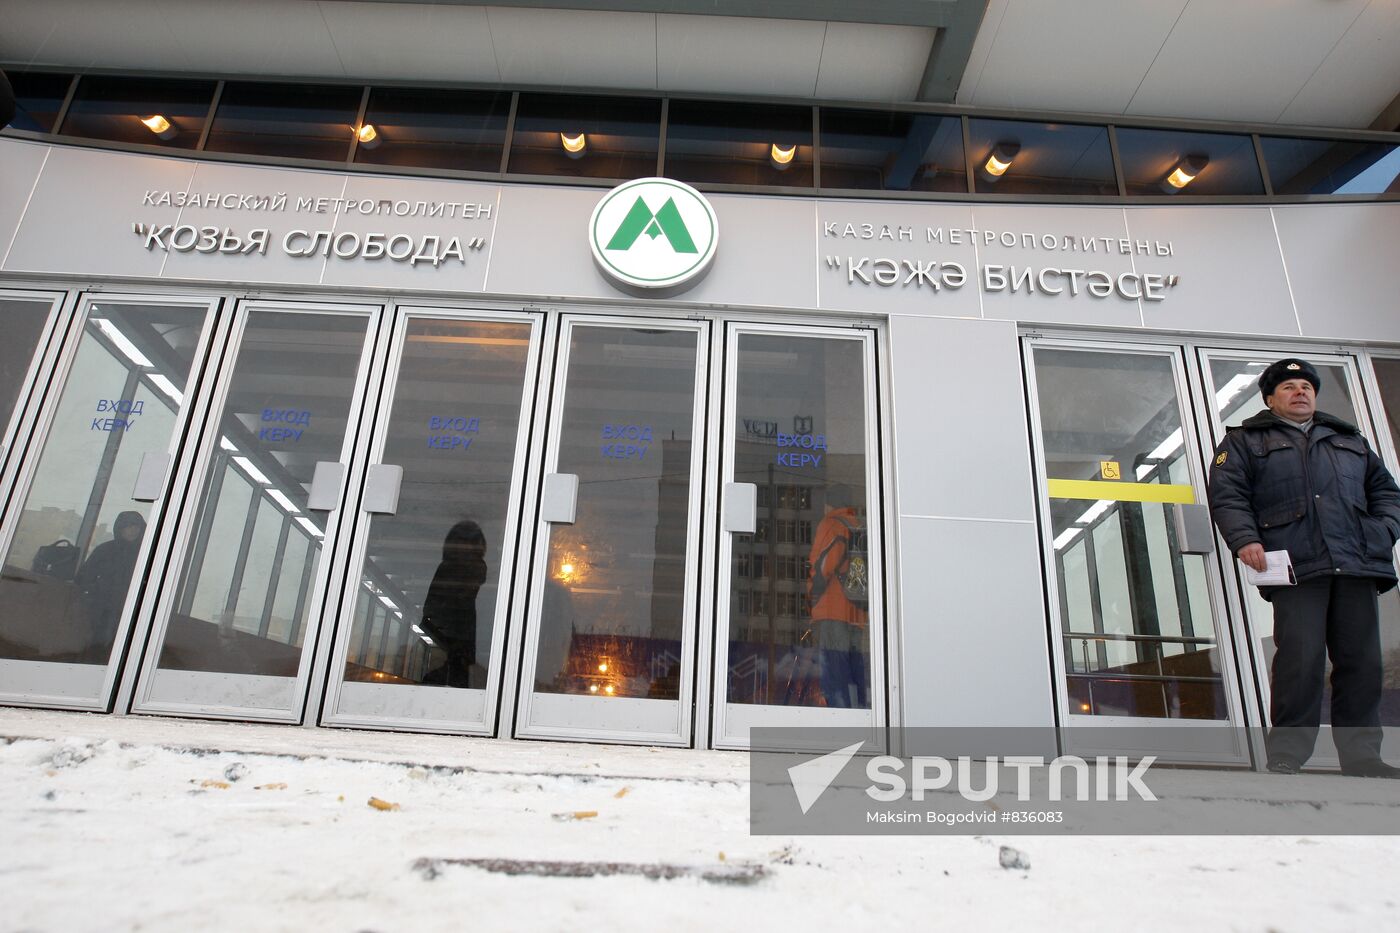 Opening Kazan metro station "Kozya Sloboda"